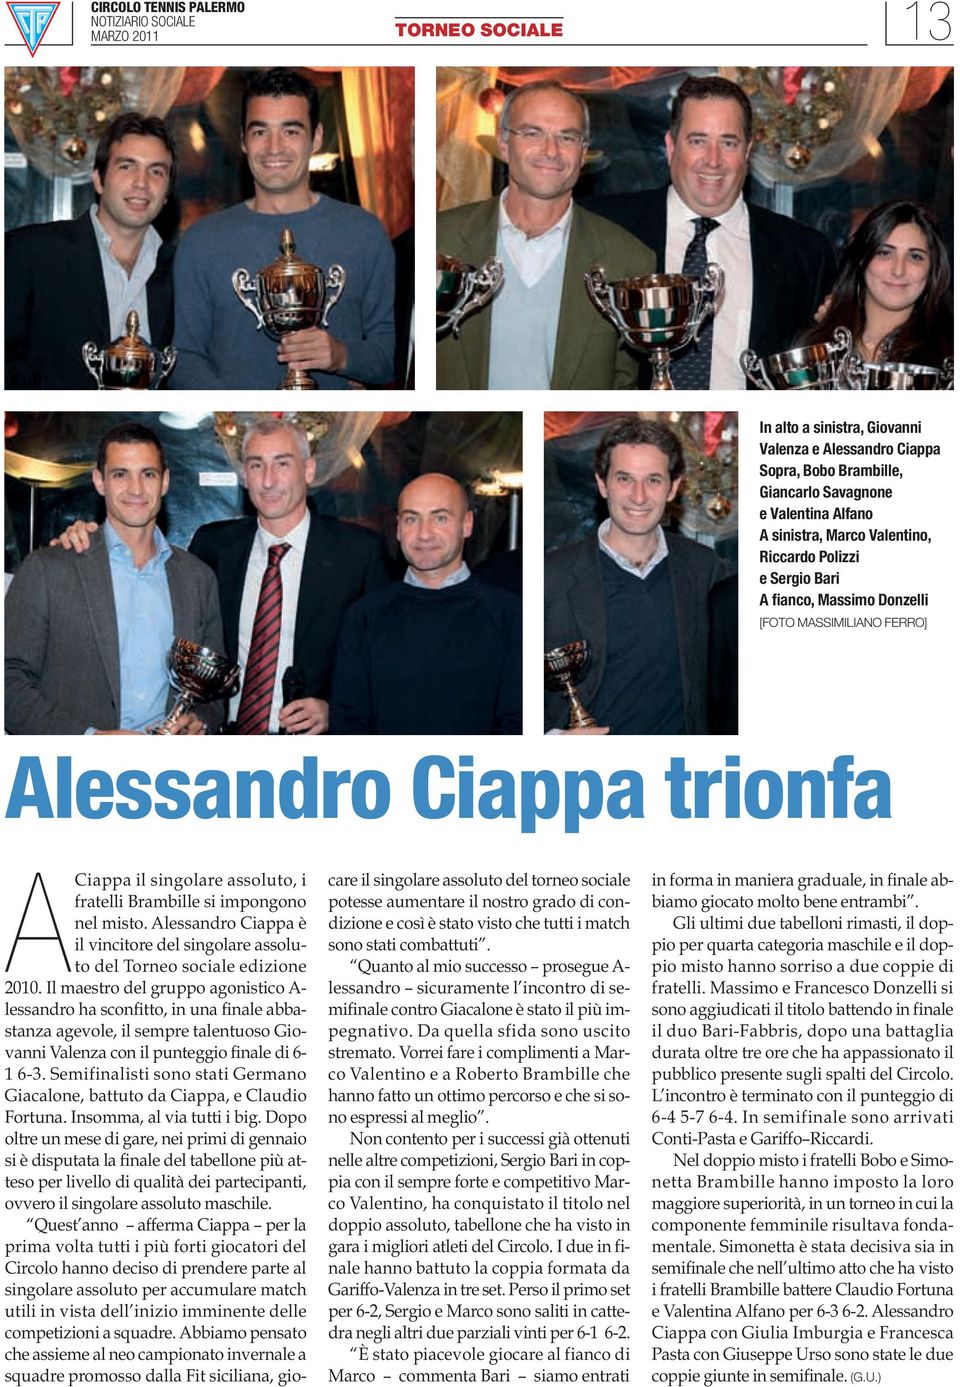 Alessandro Ciappa è il vincitore del singolare assoluto del Torneo sociale edizione 2010.